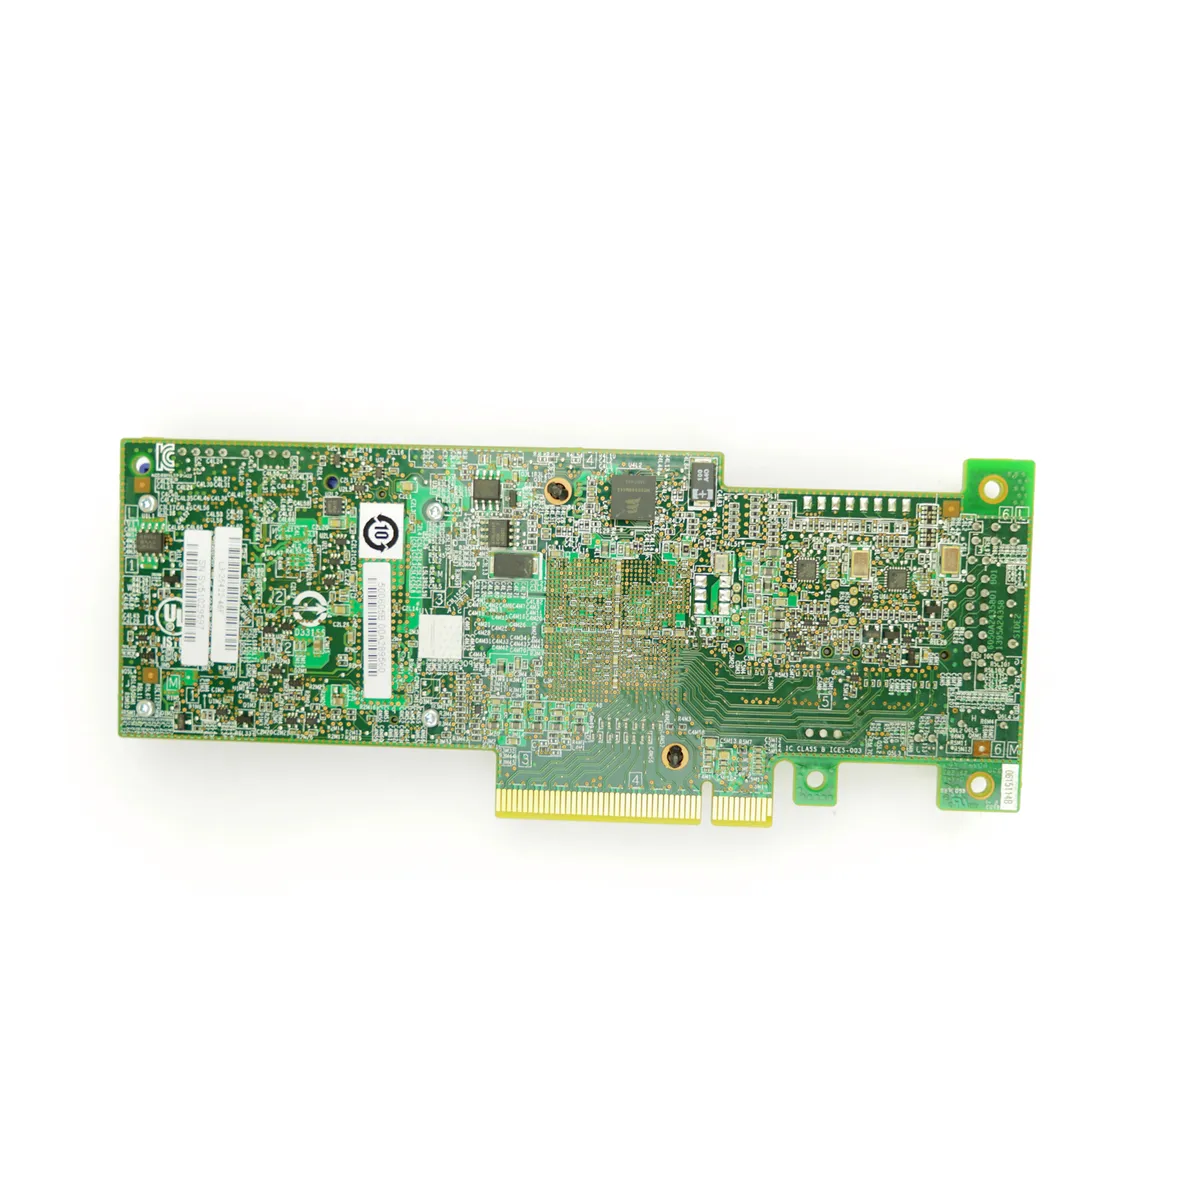 IBM ServeRAID M5110 1GB - PCIe-x8 RAID Controller